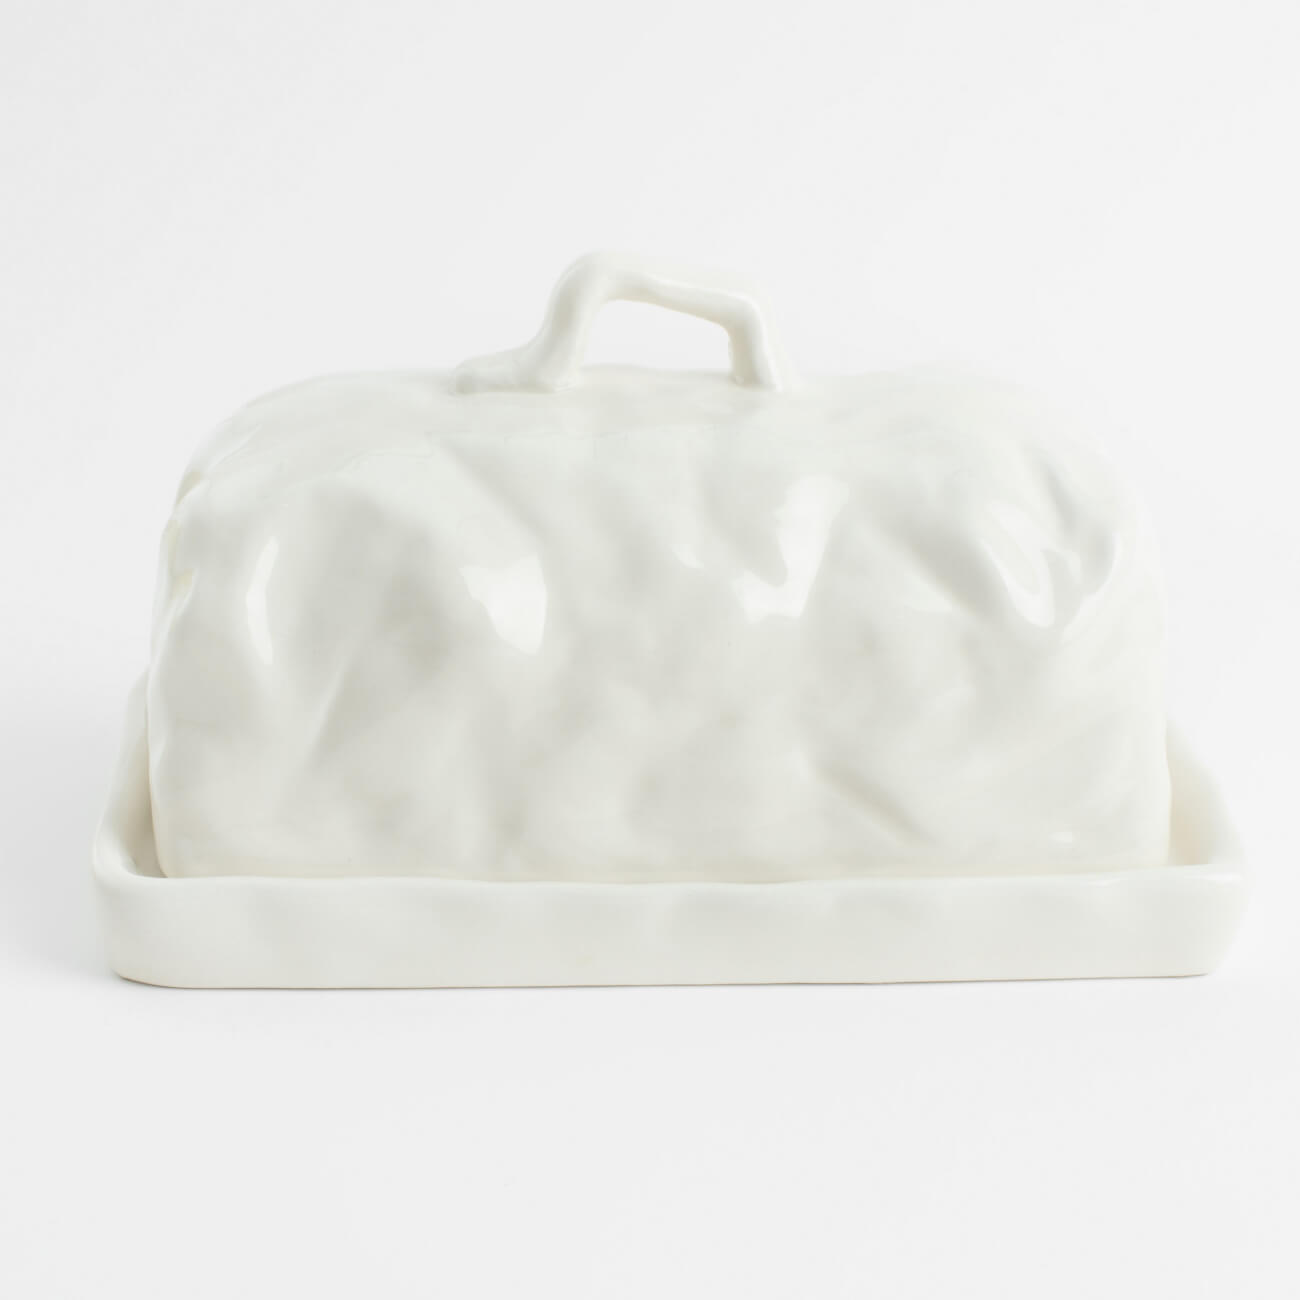 Масленка, 18 см, керамика, прямоугольная, молочная, Мятый эффект, Crumple масленка 18 см керамика прямоугольная белая butter course